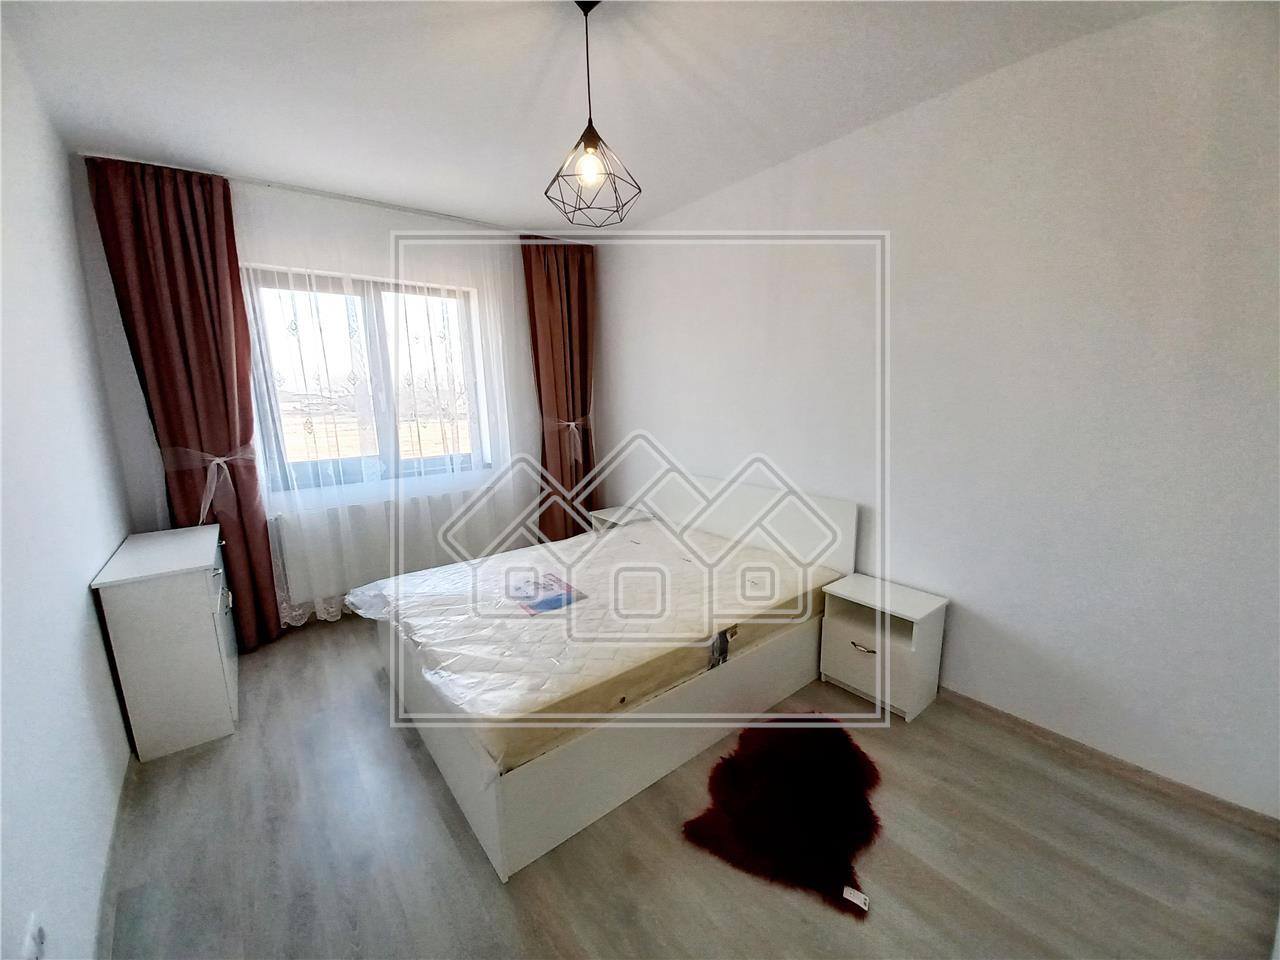 Apartment for rent in Alba Iulia - 3 rooms - parking space